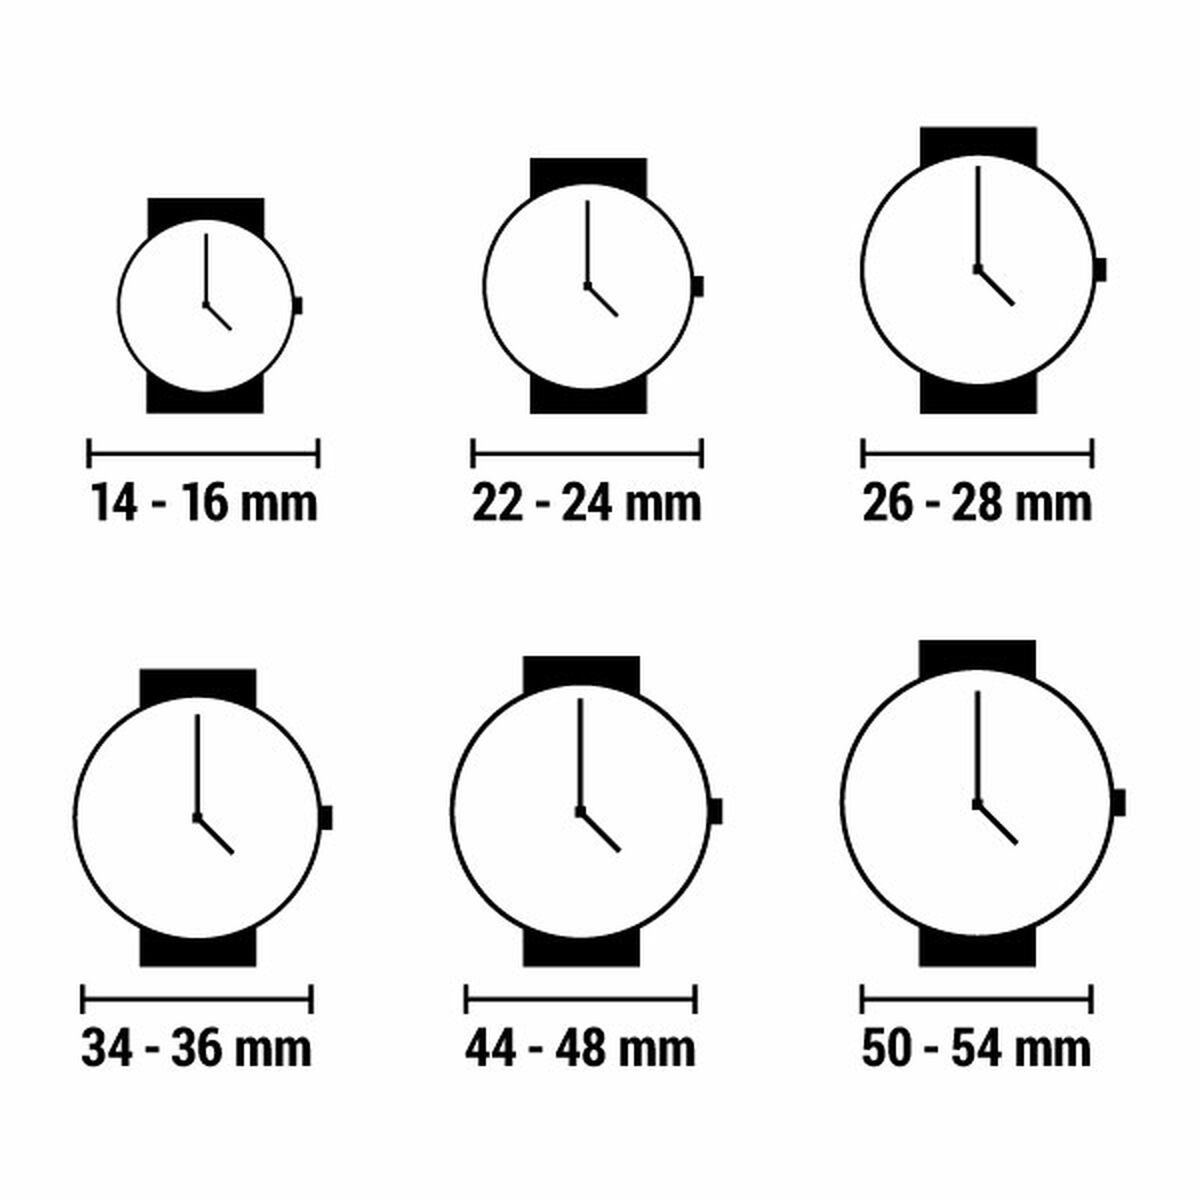 Horloge Dames Radiant RA561602 (Ø 35 mm)